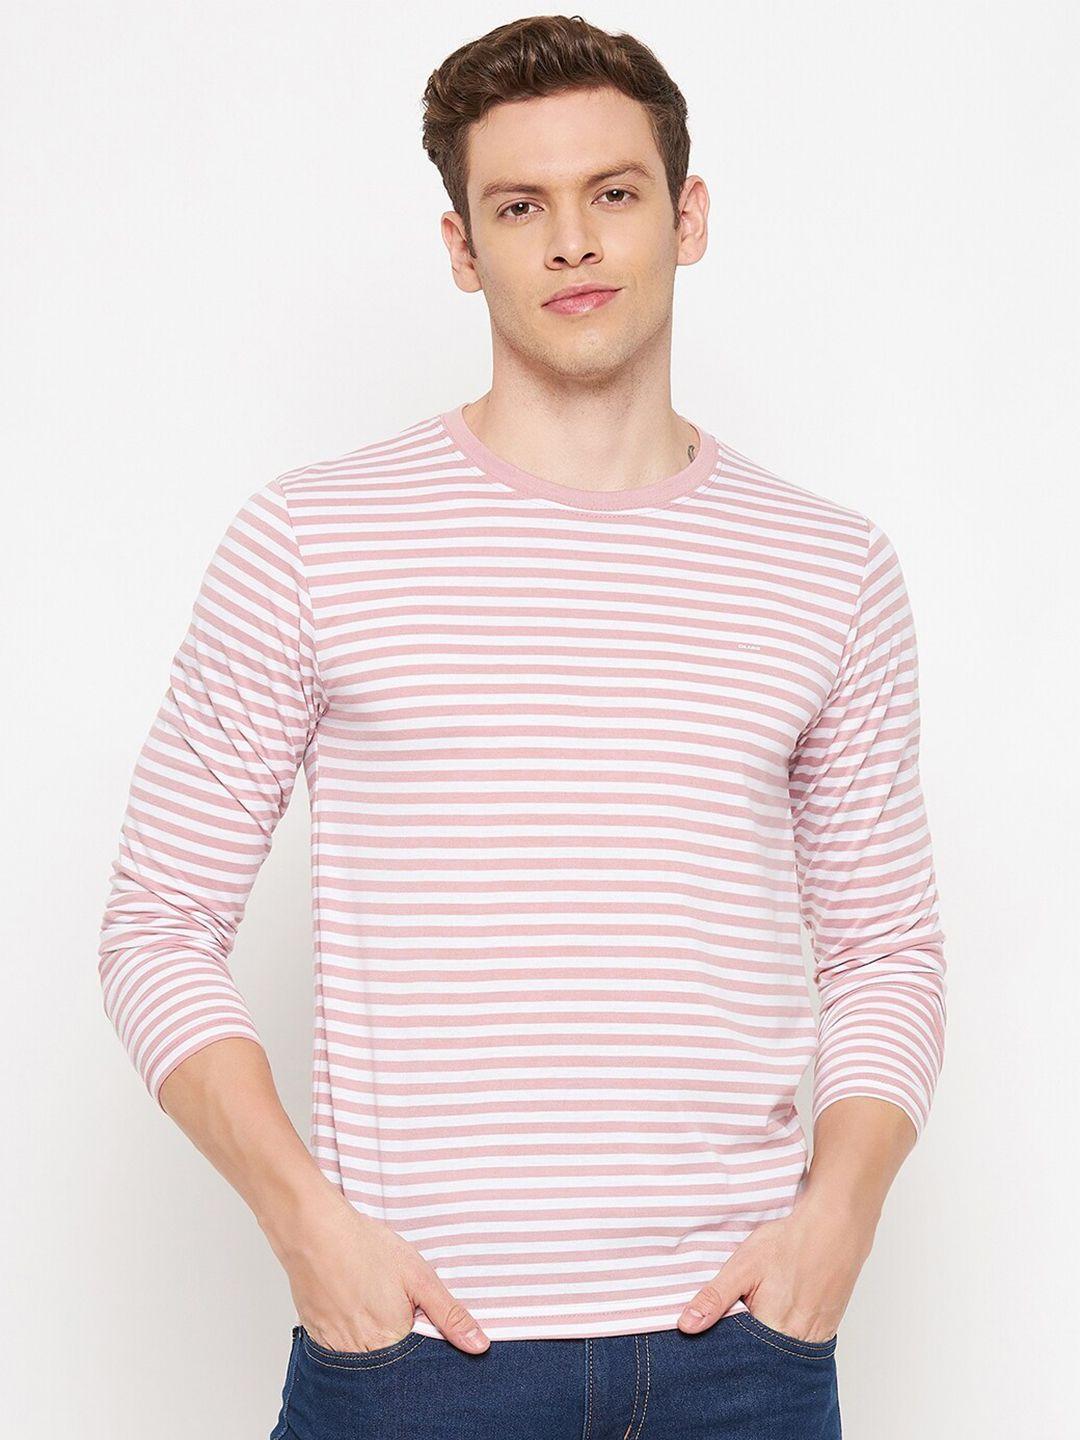 okane men pink & white striped t-shirt